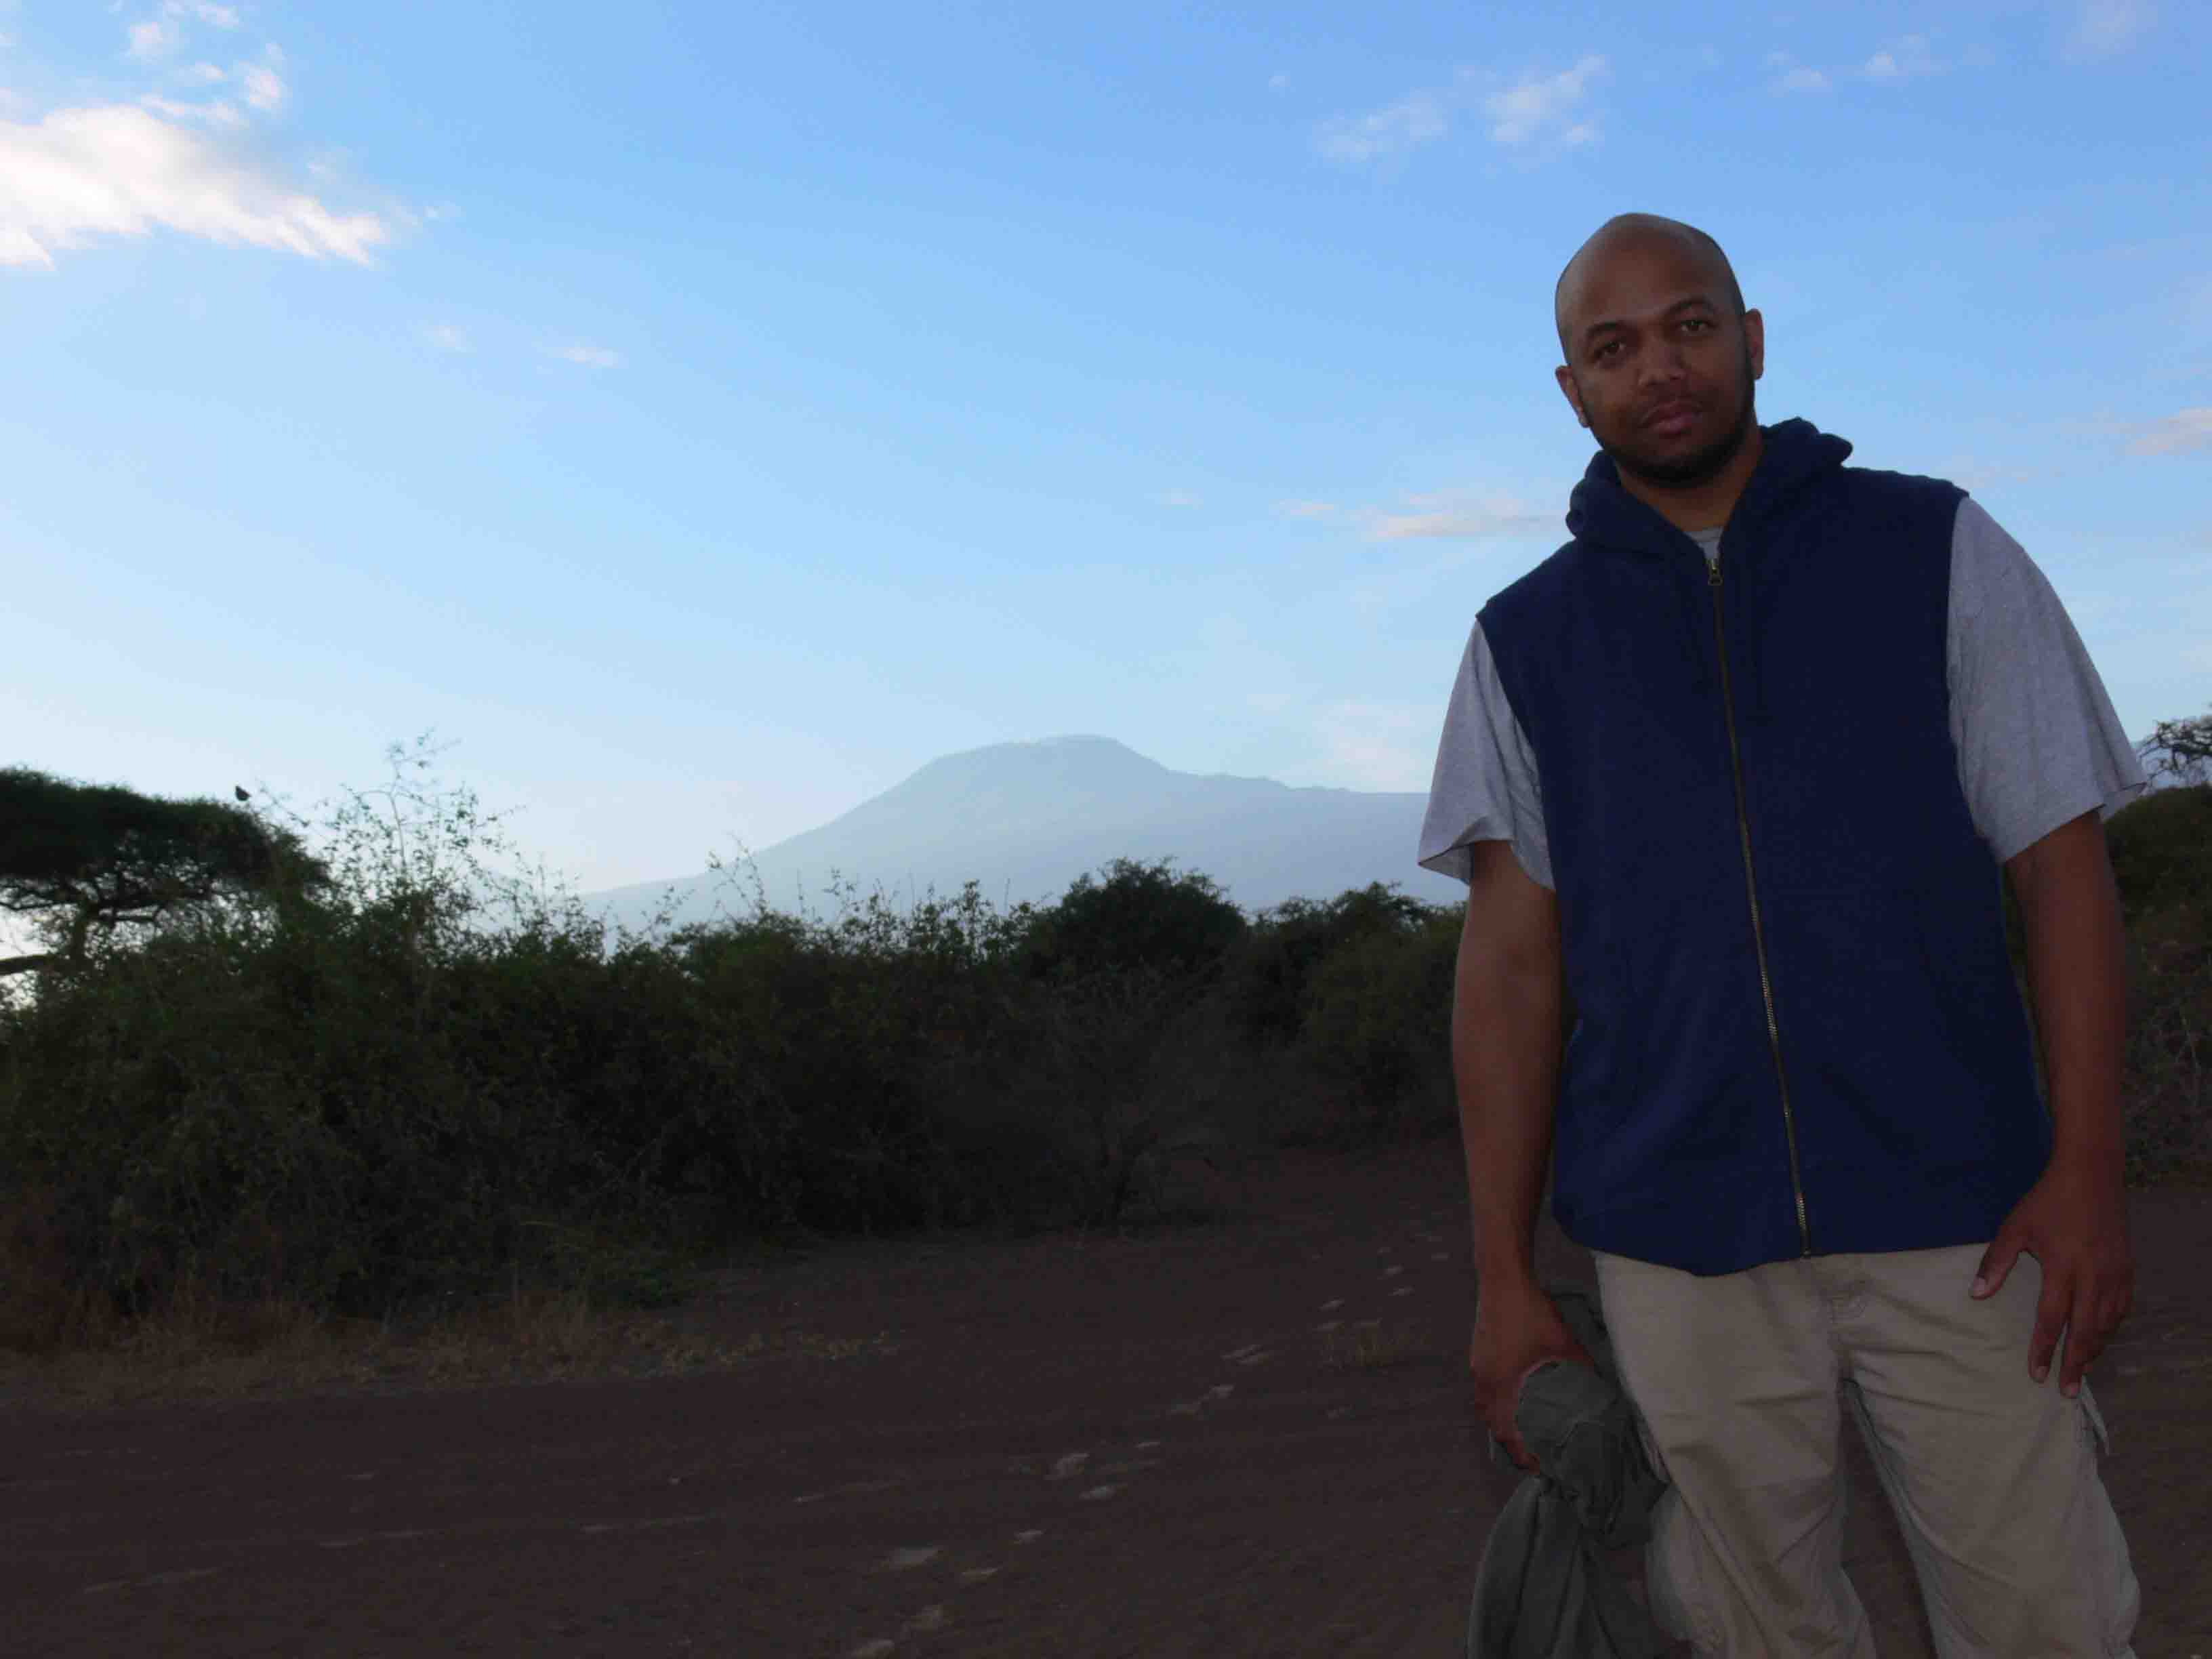 Shooting in Africa. Kilimanjaro in BG